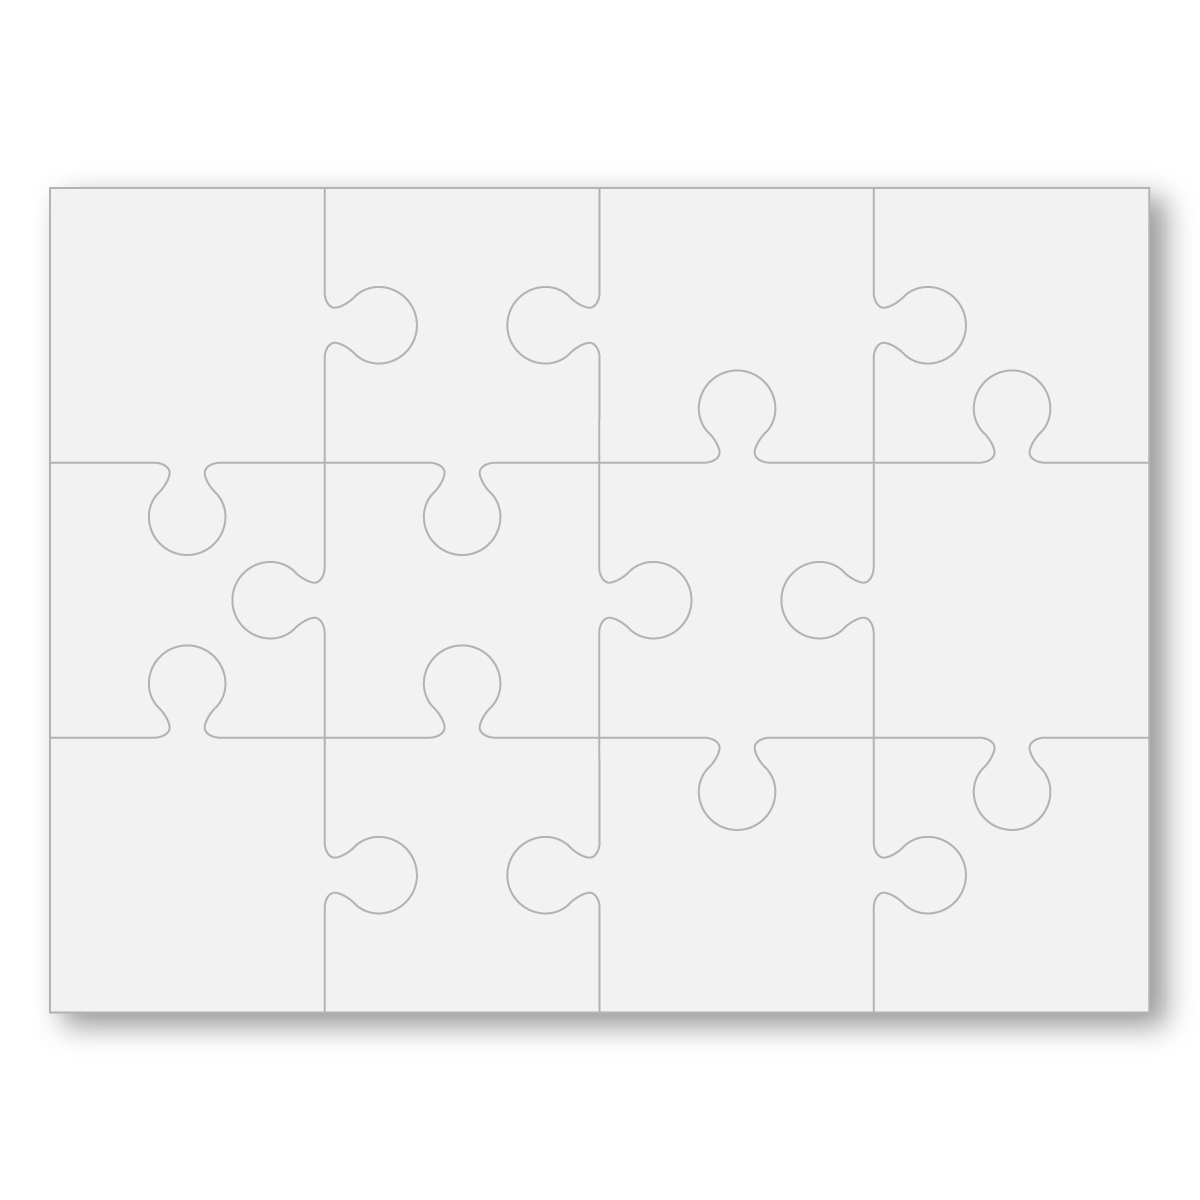 Full Color Board Puzzle 8 x 6 